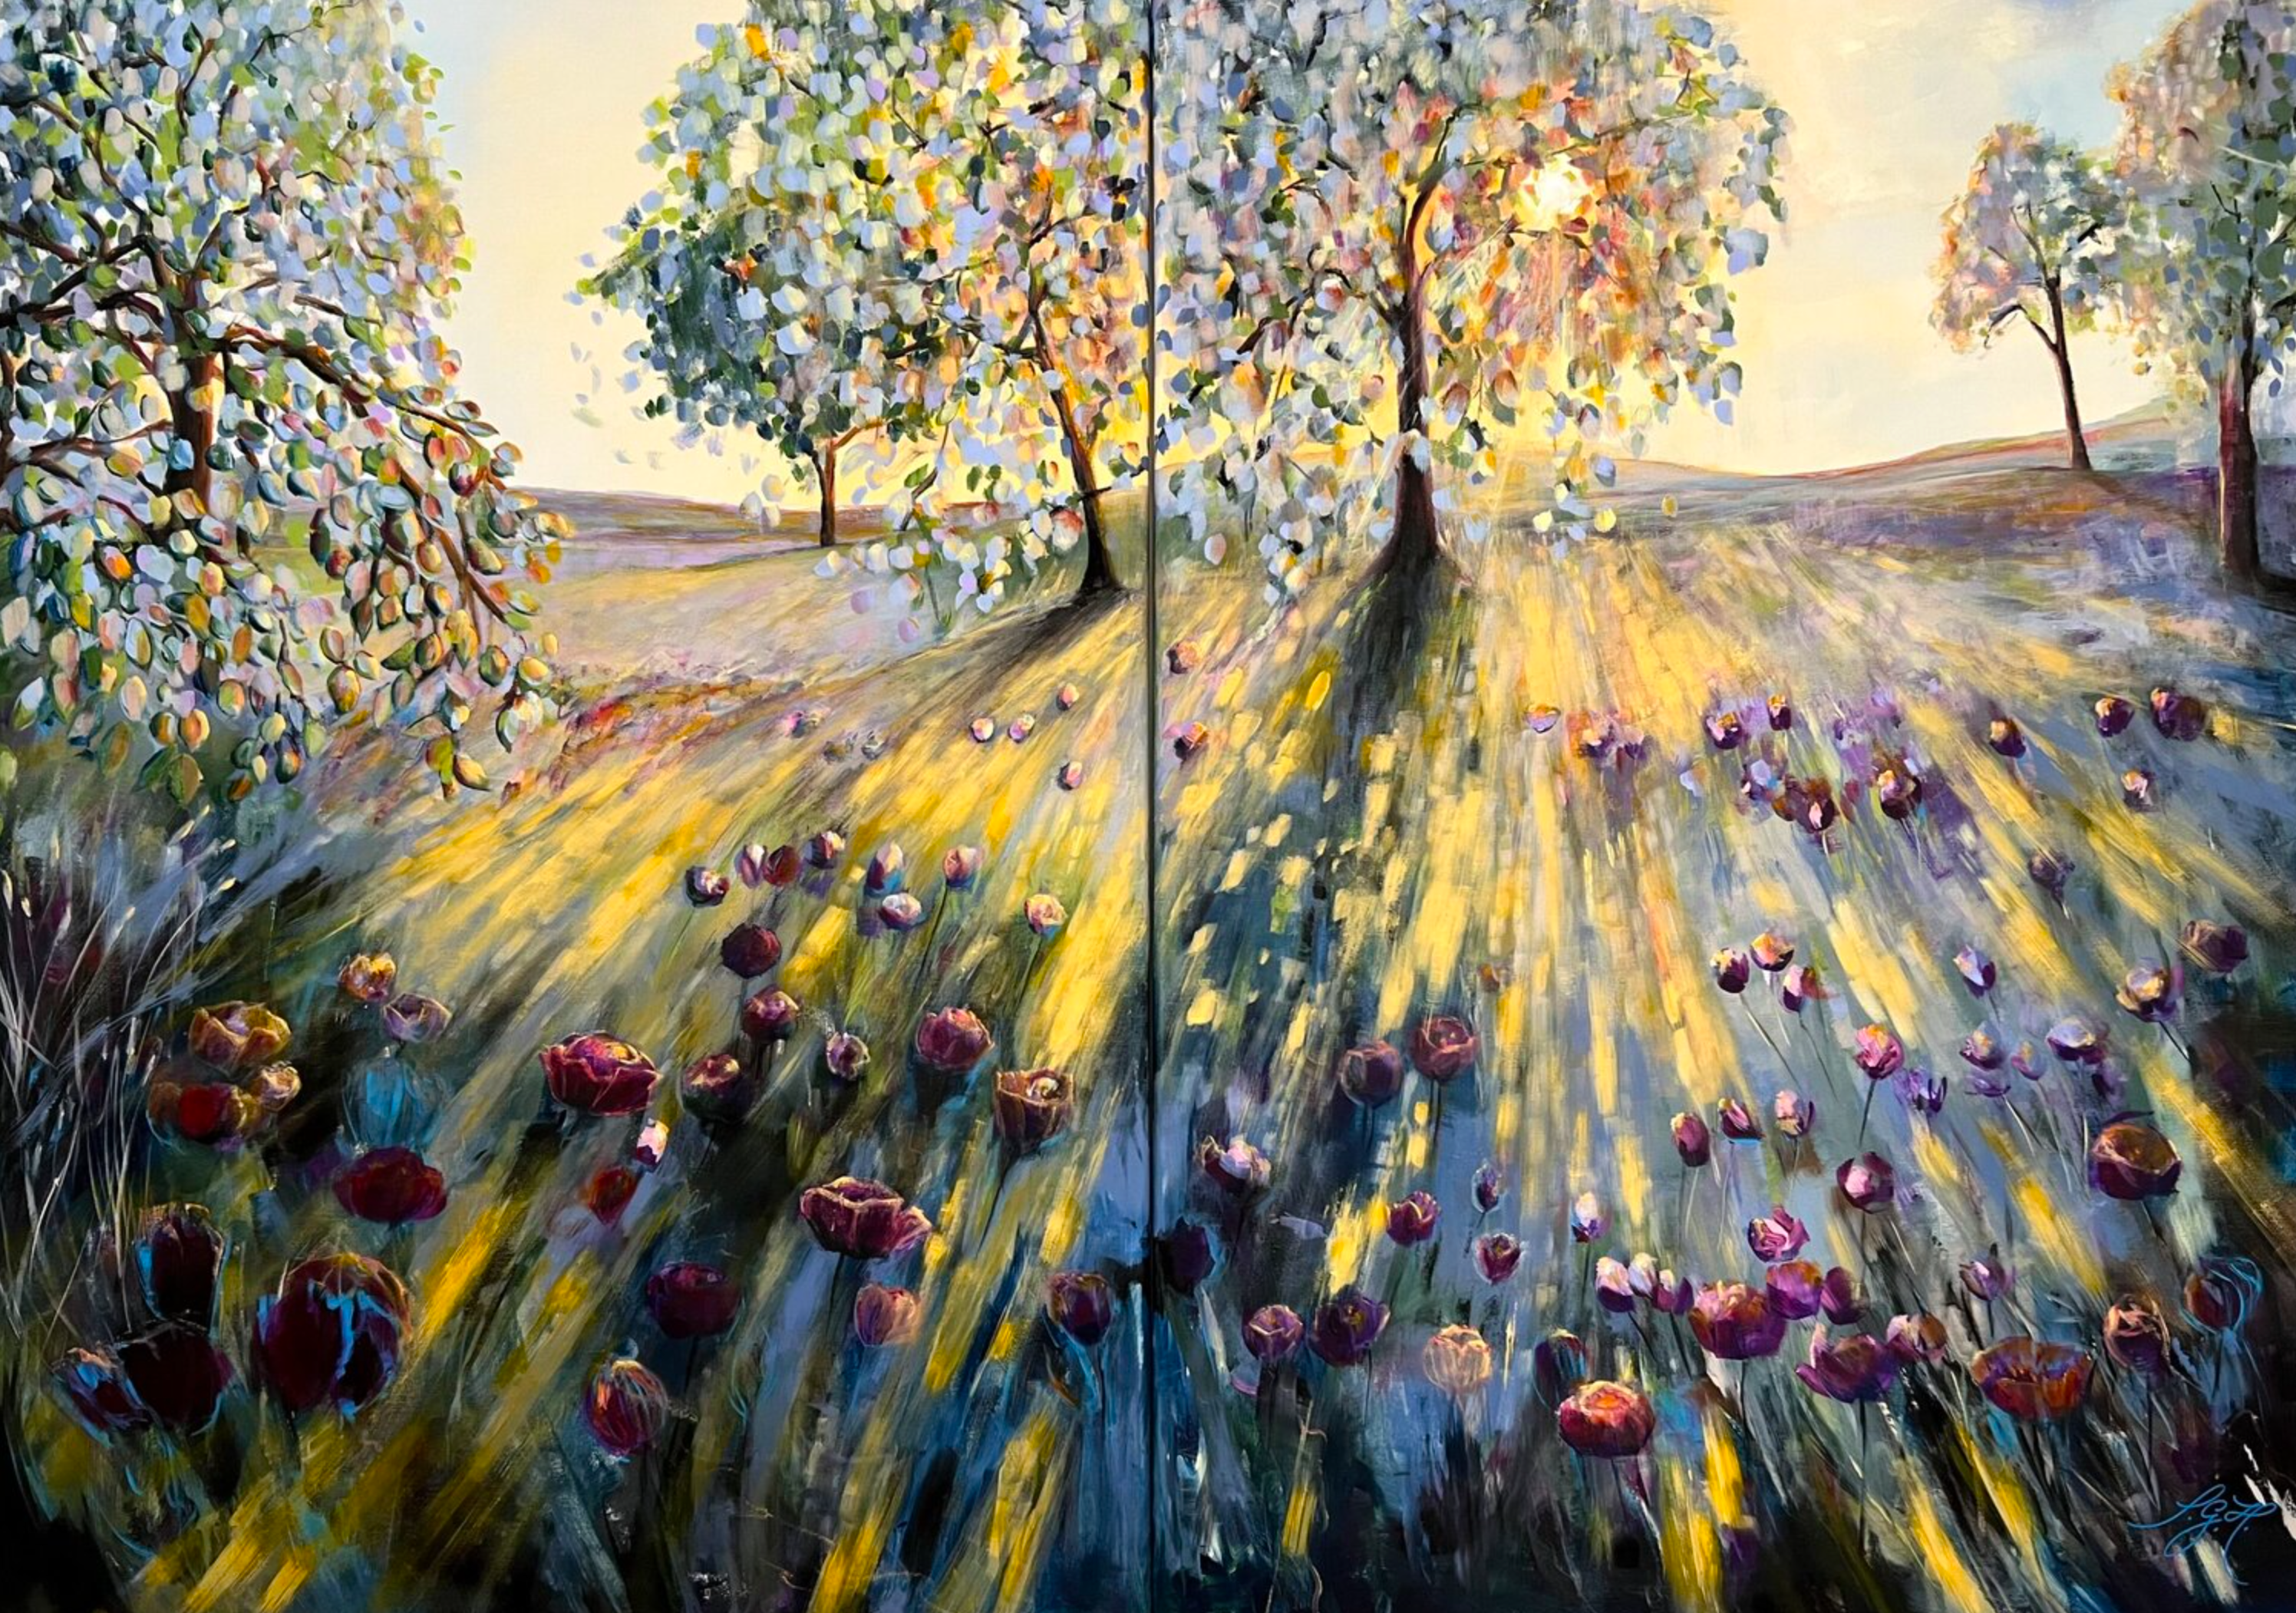 Sandra Gebhardt-Hoepfner的 "在阳光下行走 "包括2幅彩色画作。阳光照耀在明亮的田野上。树木的叶子在阳光的照耀下变成了橙色、黄色。深吸一口气，注意到这一时刻，是......。现在和这里。颜色有绿色、黑色、深蓝色、浅黄色、暖黄色、深粉色、粉红色、白色、浅蓝色、丁香蓝、浅绿色、蓝色和灰色。